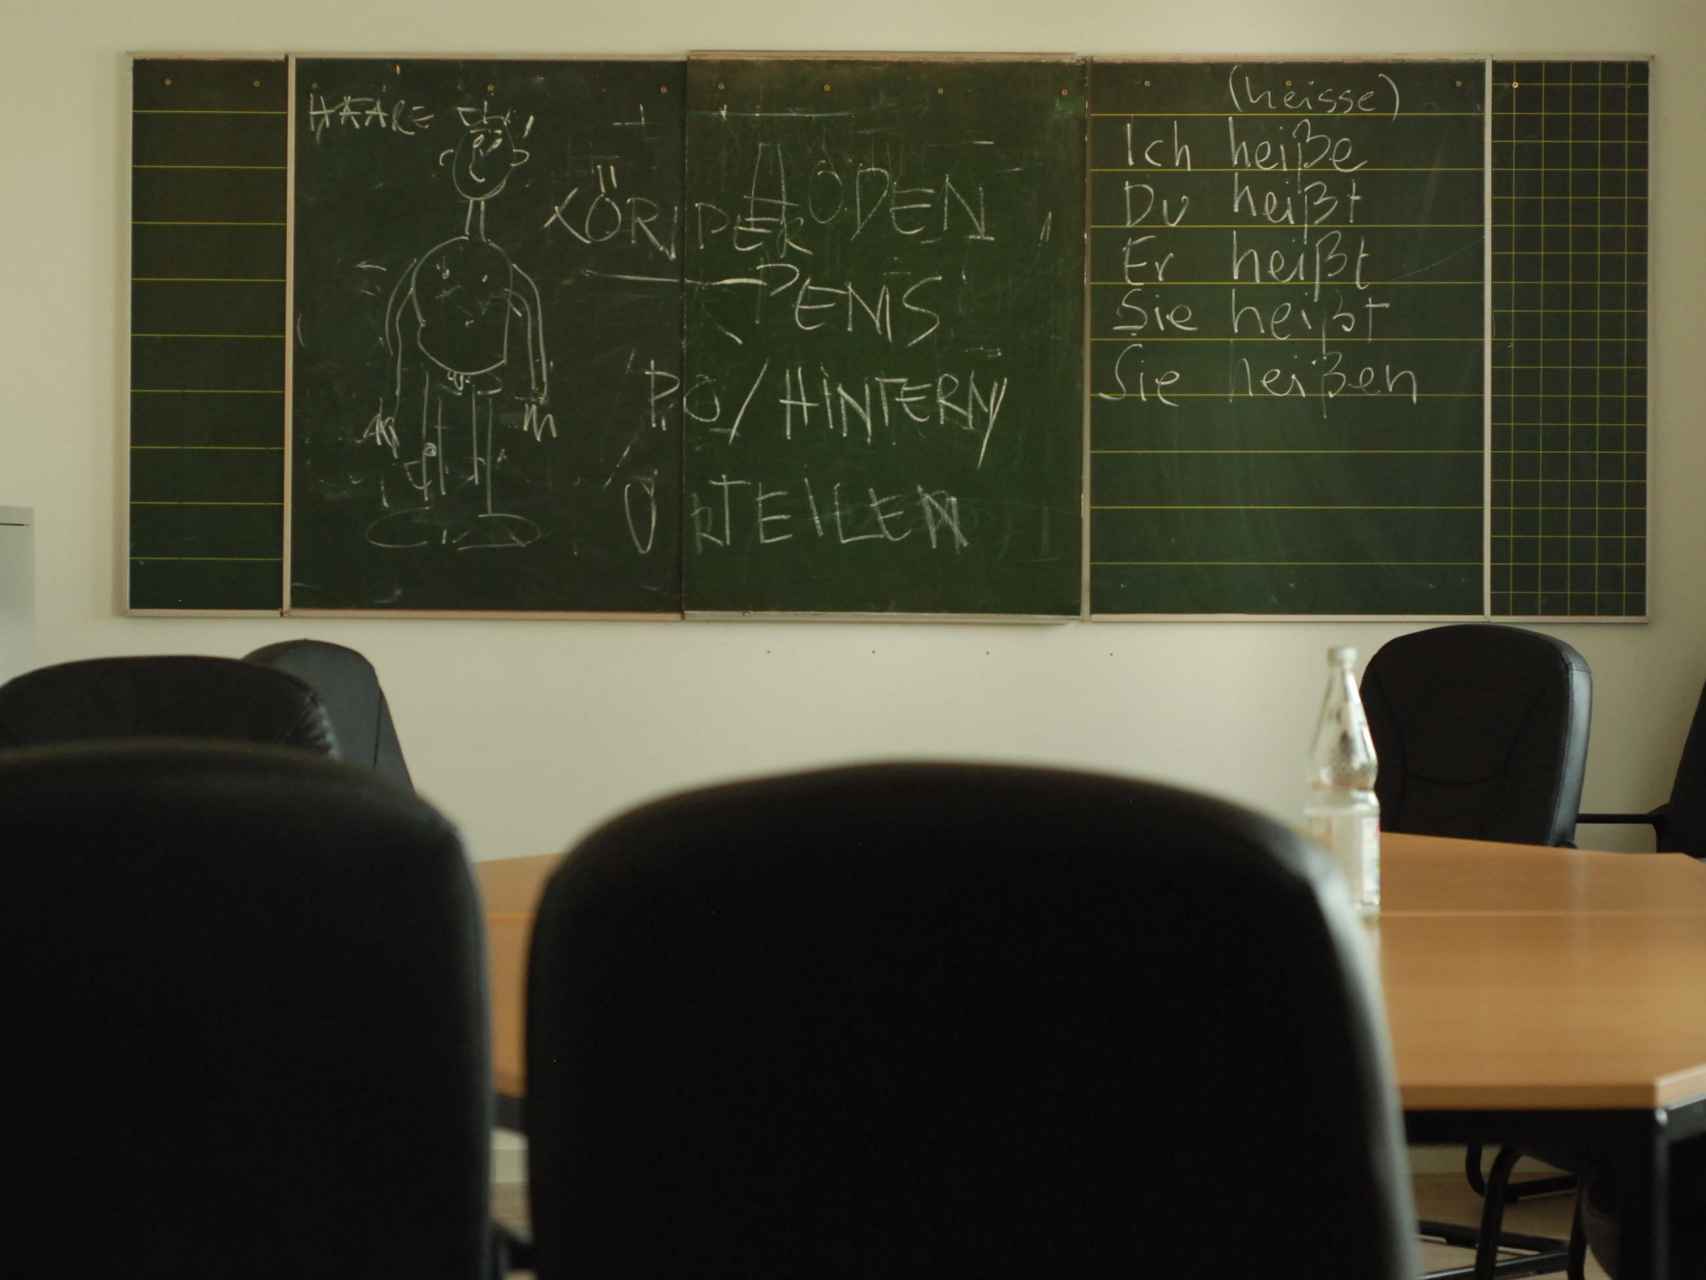 Los refugiados reciben clases en alemán donde hablan de temas sexuales.